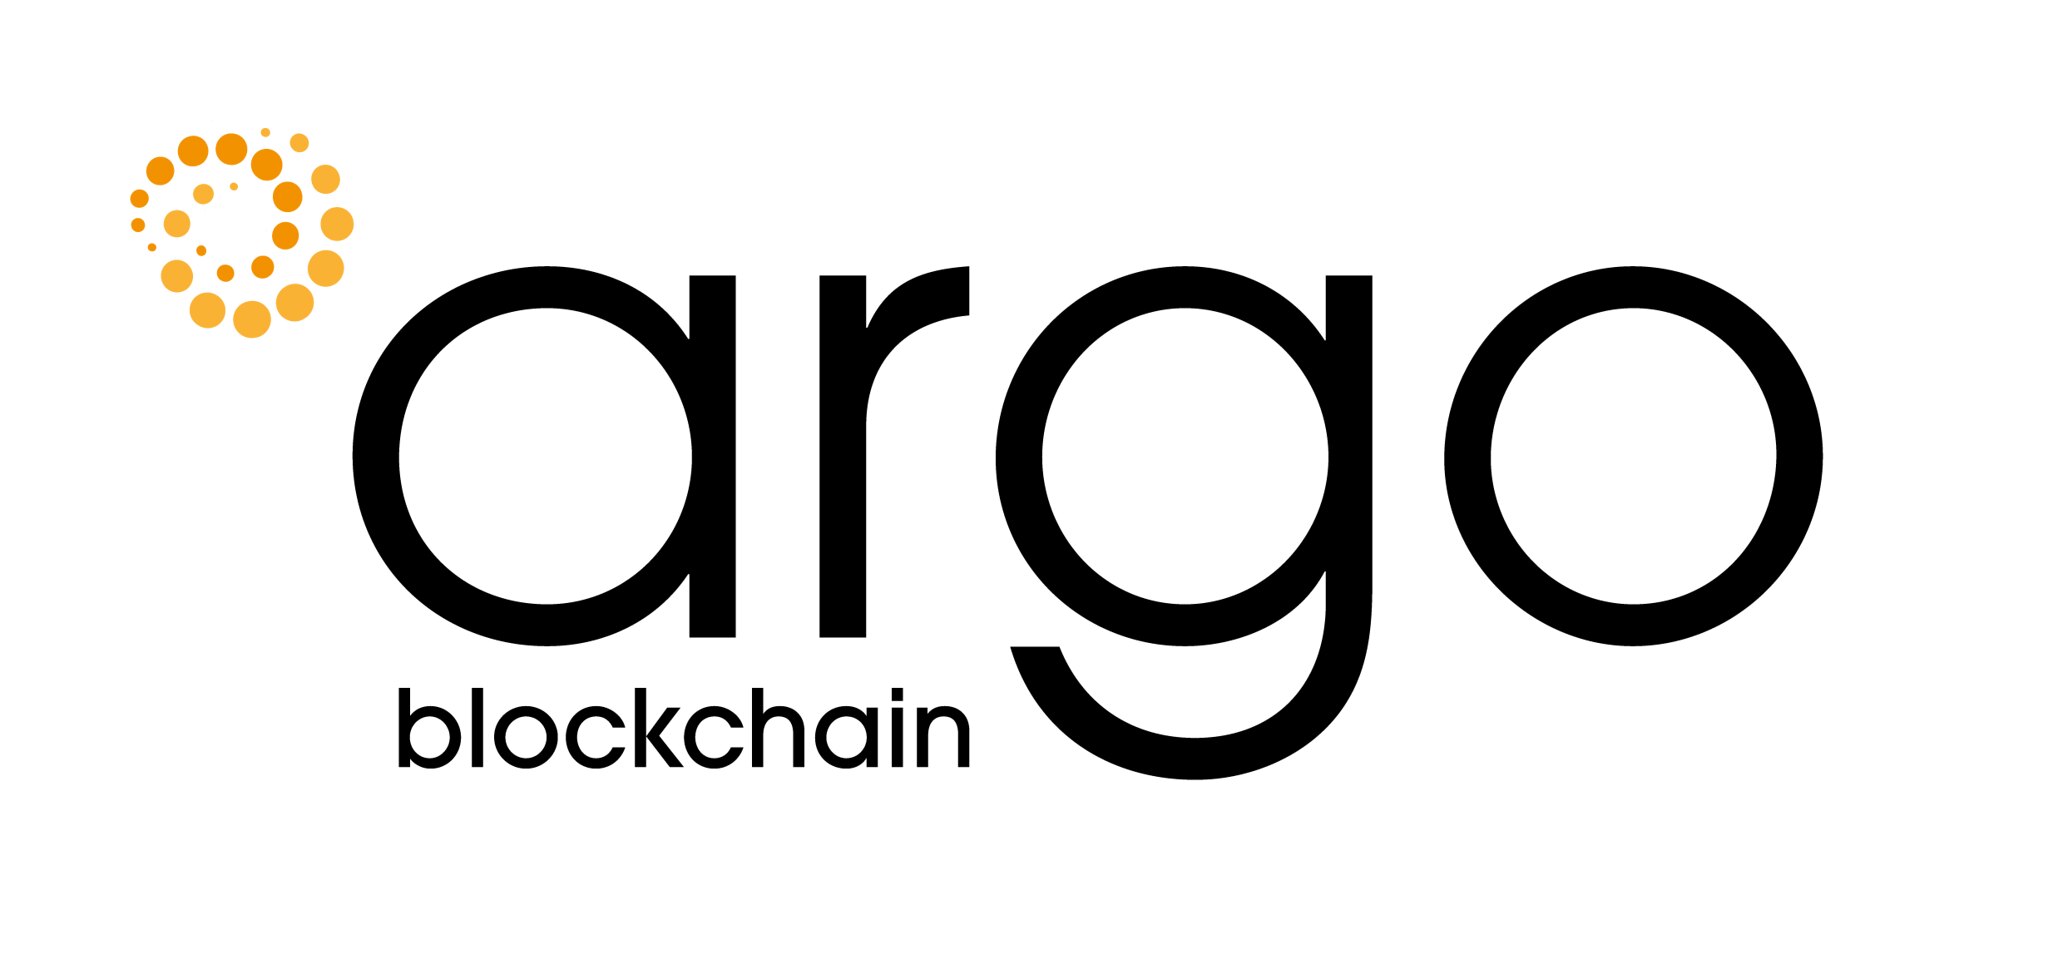 Bitcoin Miner Argo Blockchain $65 Million Deal With Galaxy Digital For Texas Facility